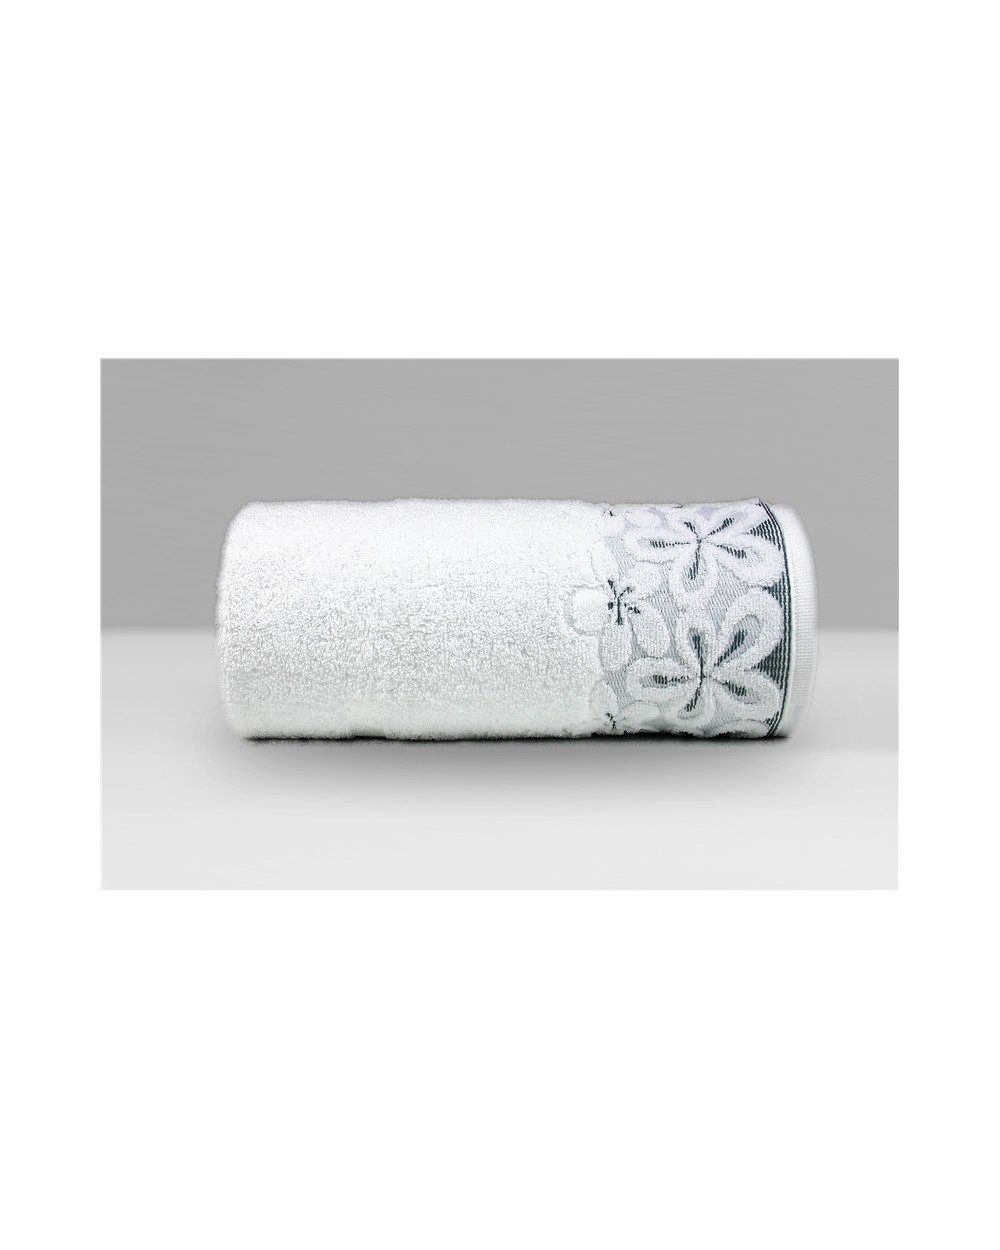 Ręcznik Bella mikrobawełna 70x140 biały